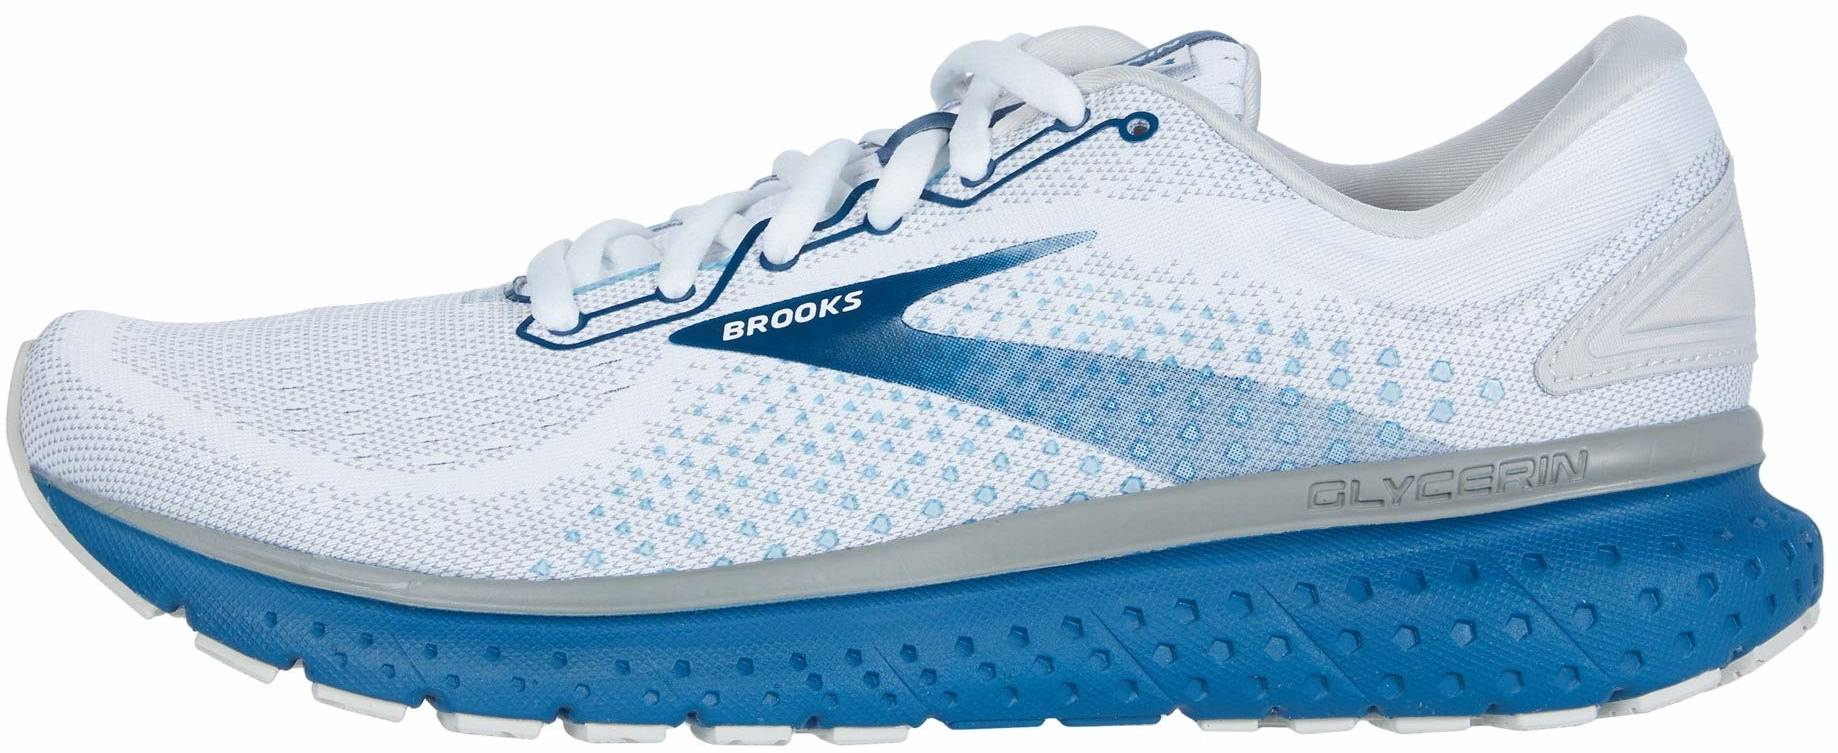 Brooks Running Shoes White | tyello.com